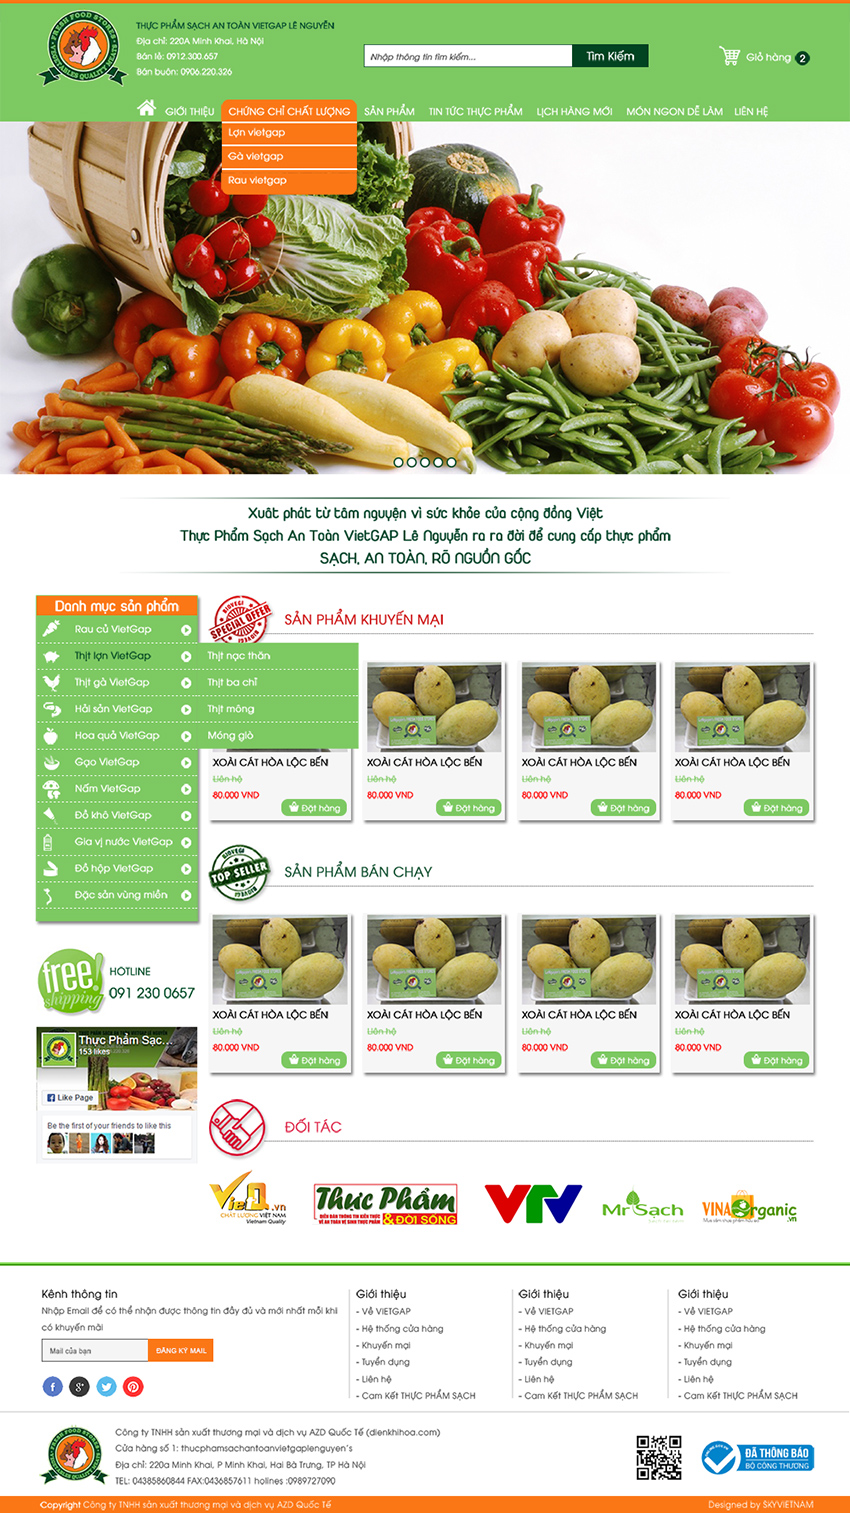 Mẫu thiết kế website bán hàng thực phẩm an toàn Viet Gap